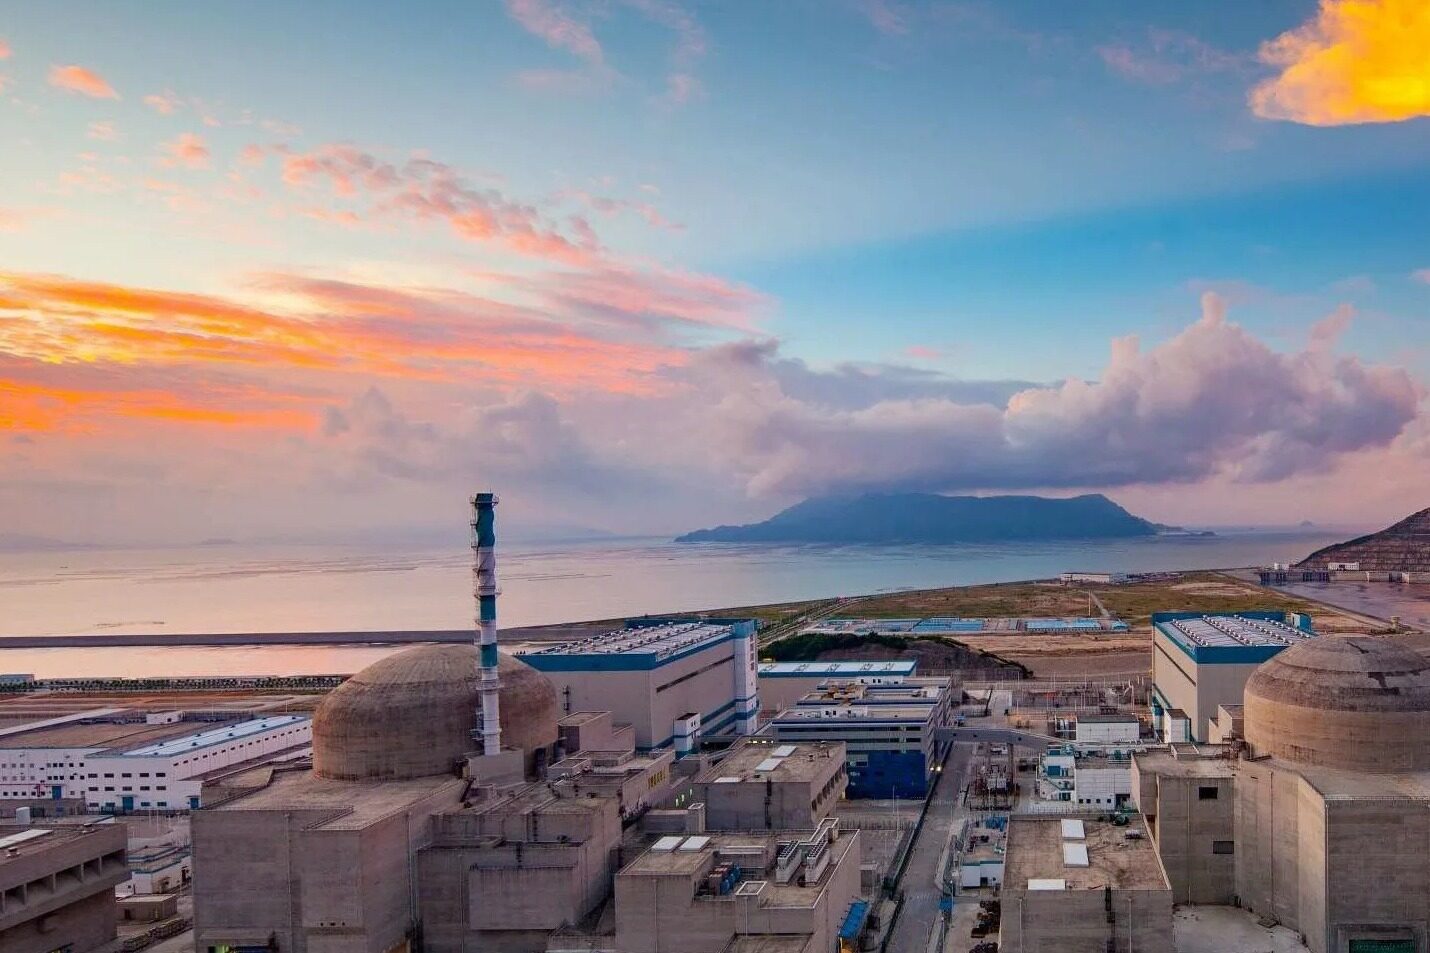 国内最大核能供热项目“暖核一号”启动今冬明春供暖 - 核电 - 电力科技网